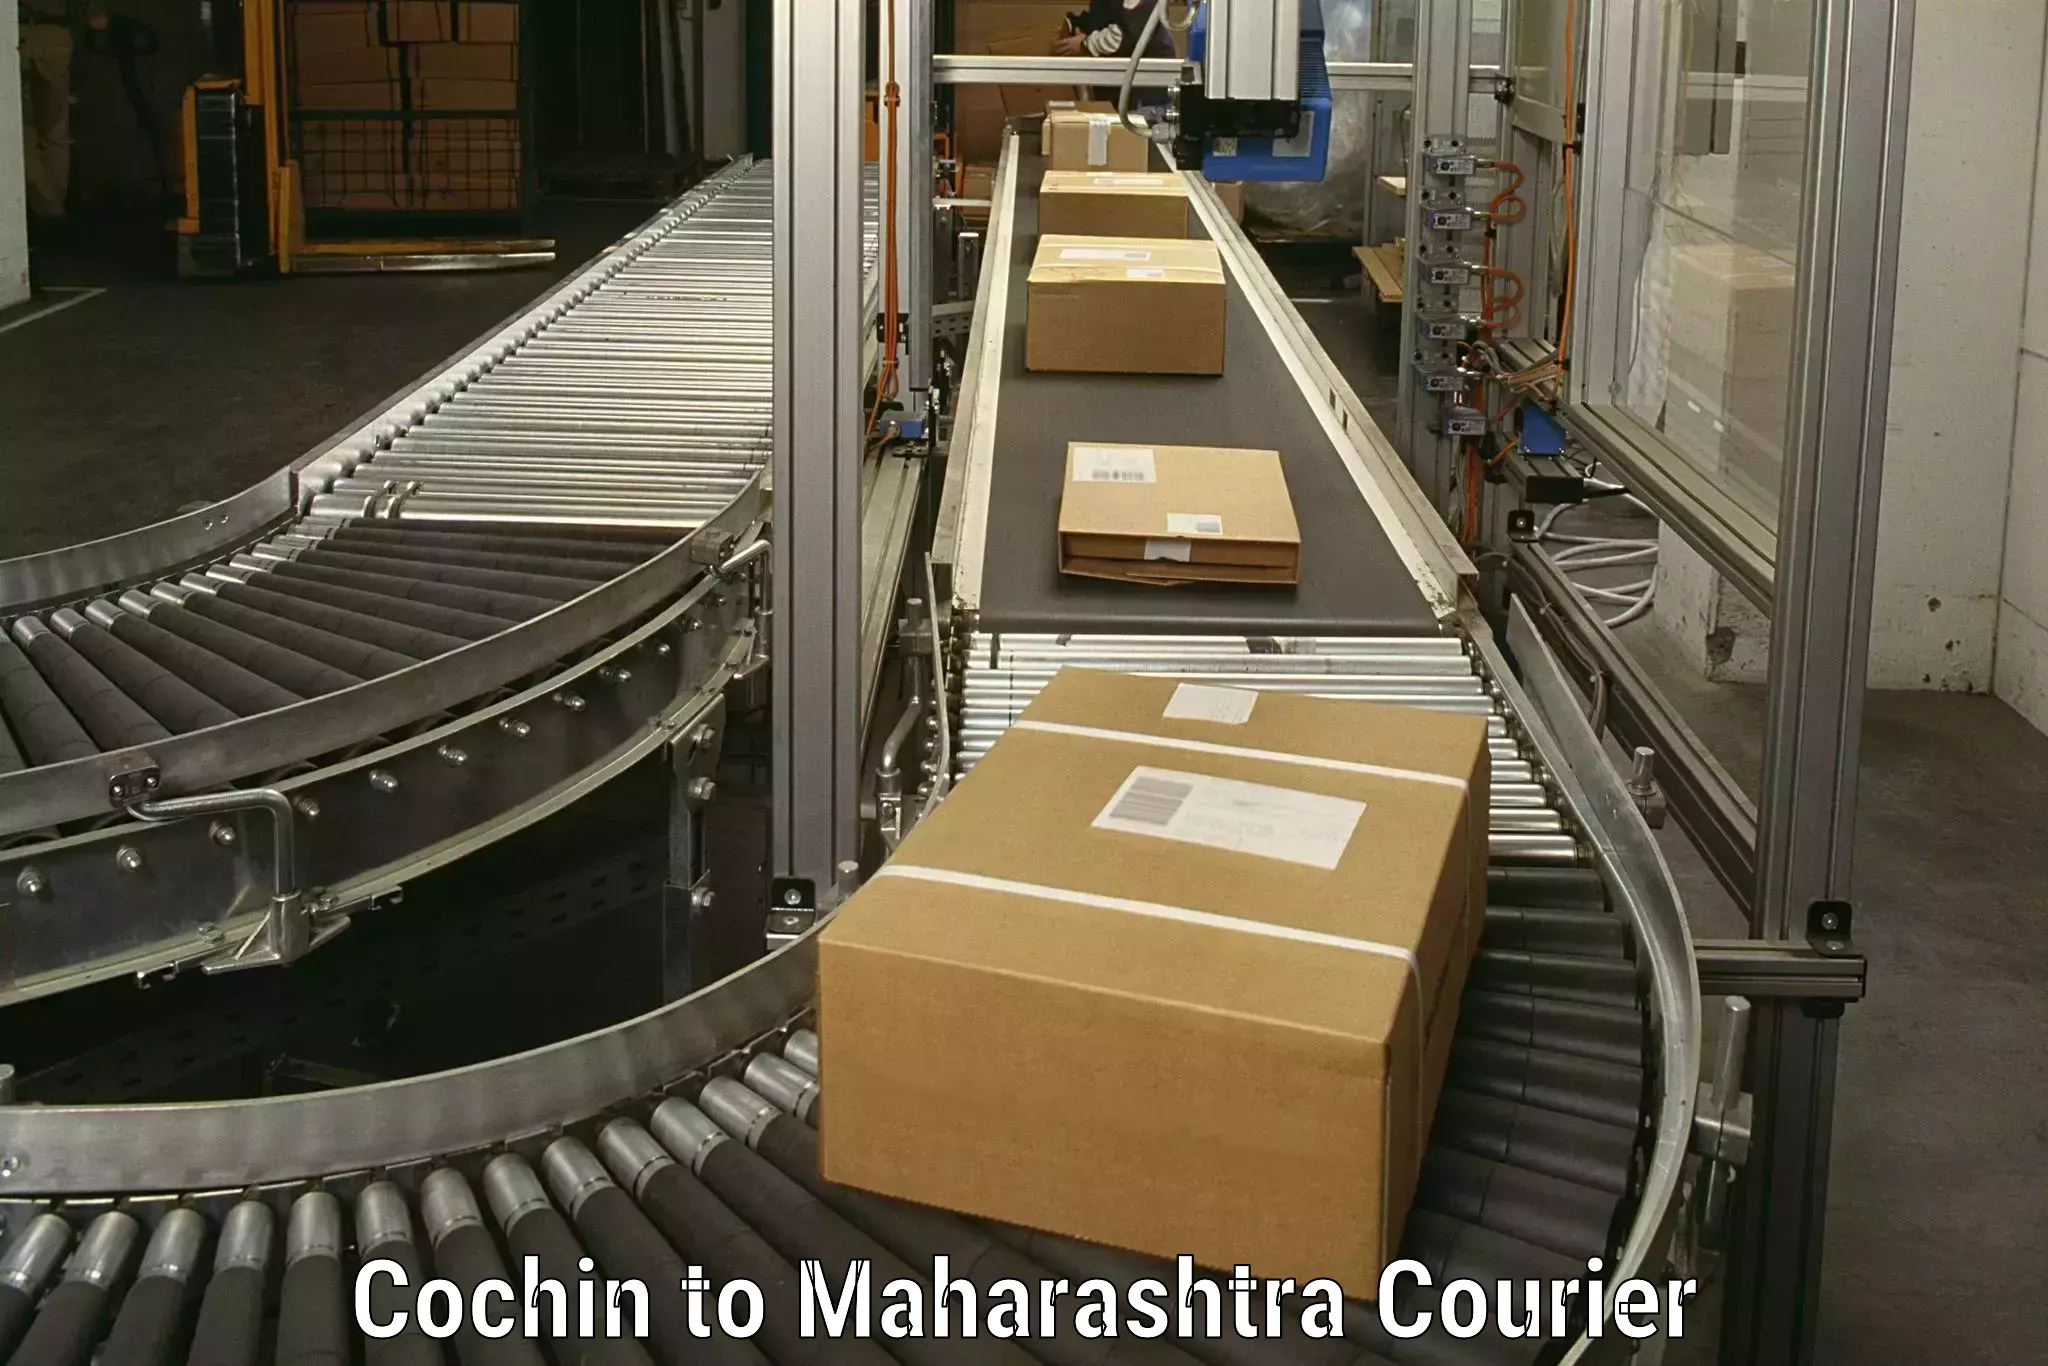 Household goods transport service Cochin to Maharashtra